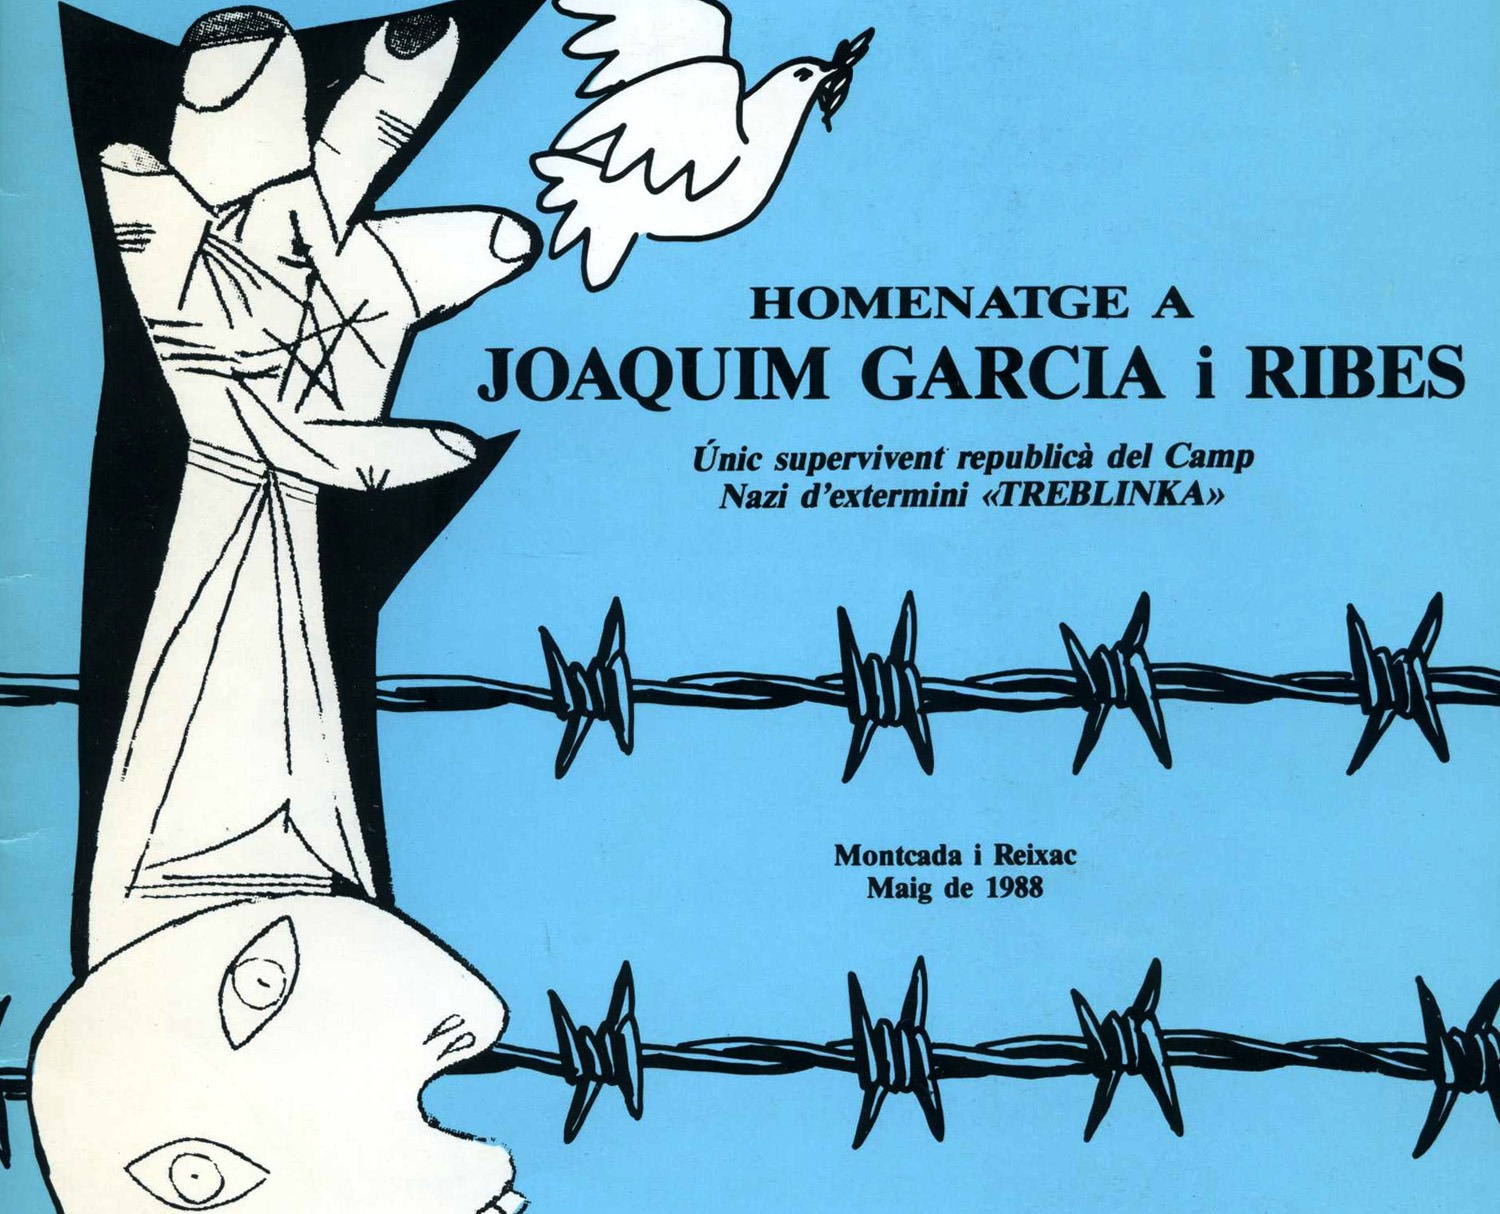 (14) JOAQUIM GARCÍA RIBES: TREBLINKA